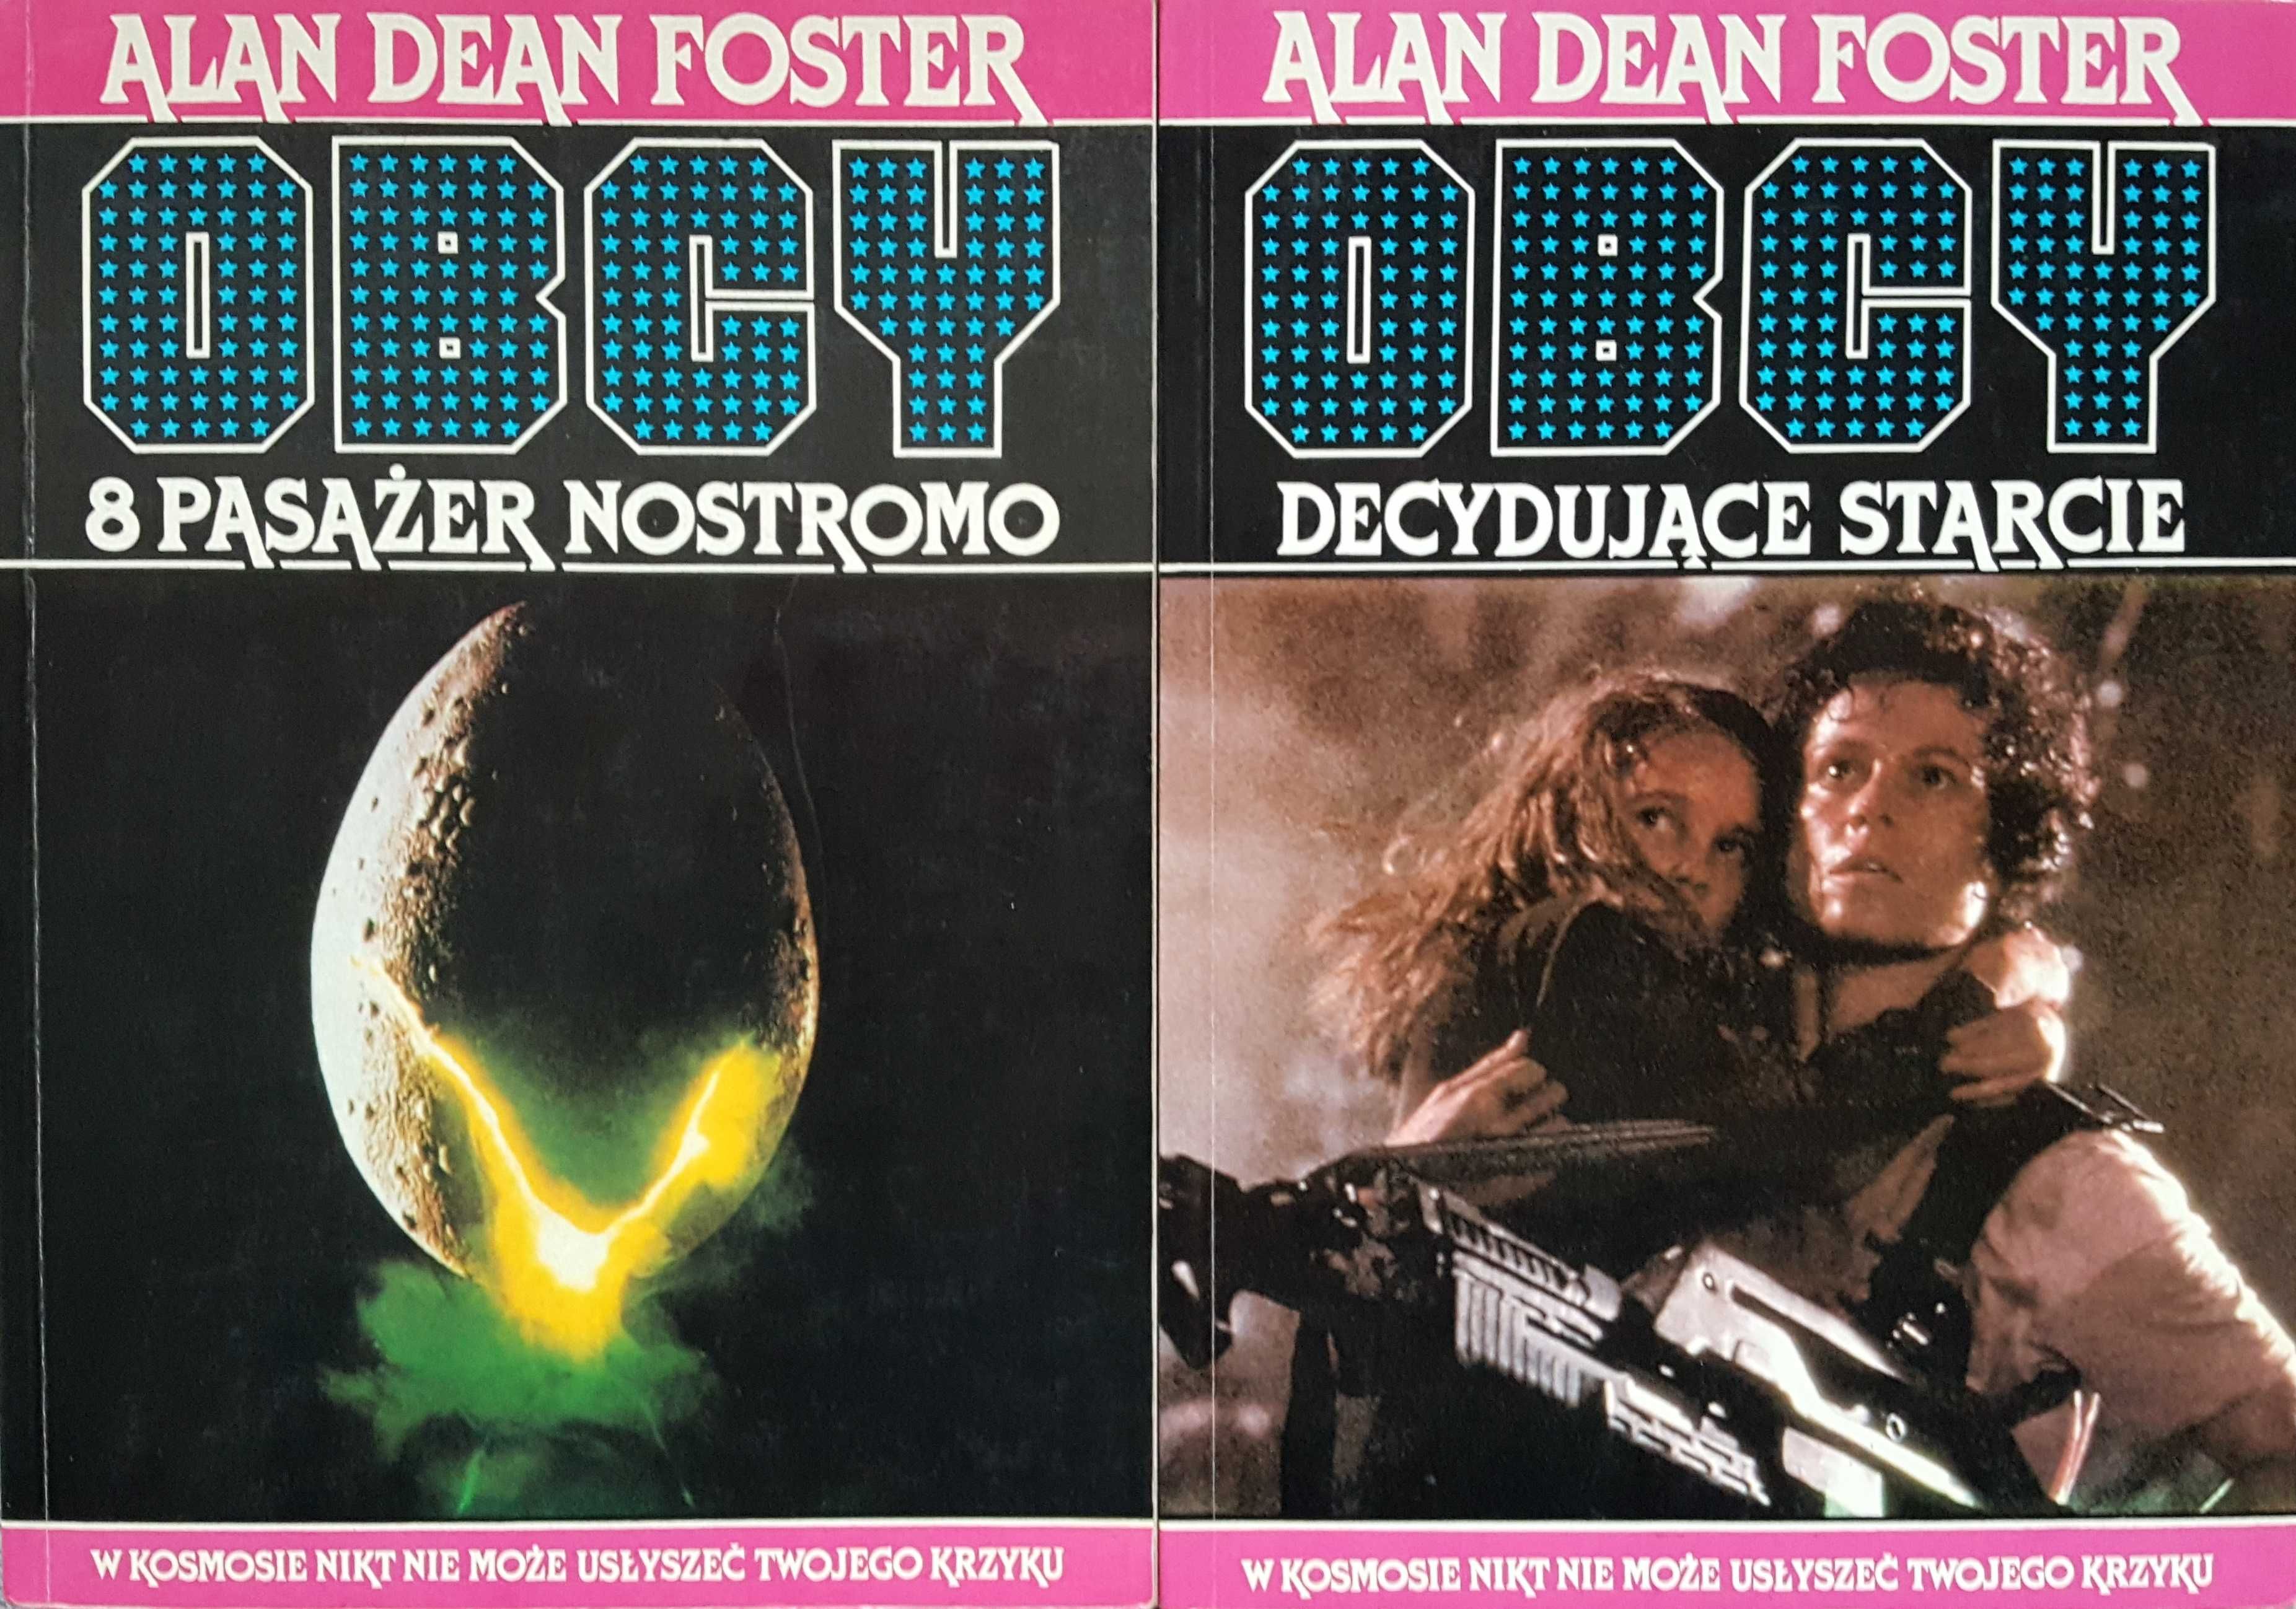 Obcy 8 Pasażer Nostromo + Obcy Decydujące Starcie - Alan Dean Foster